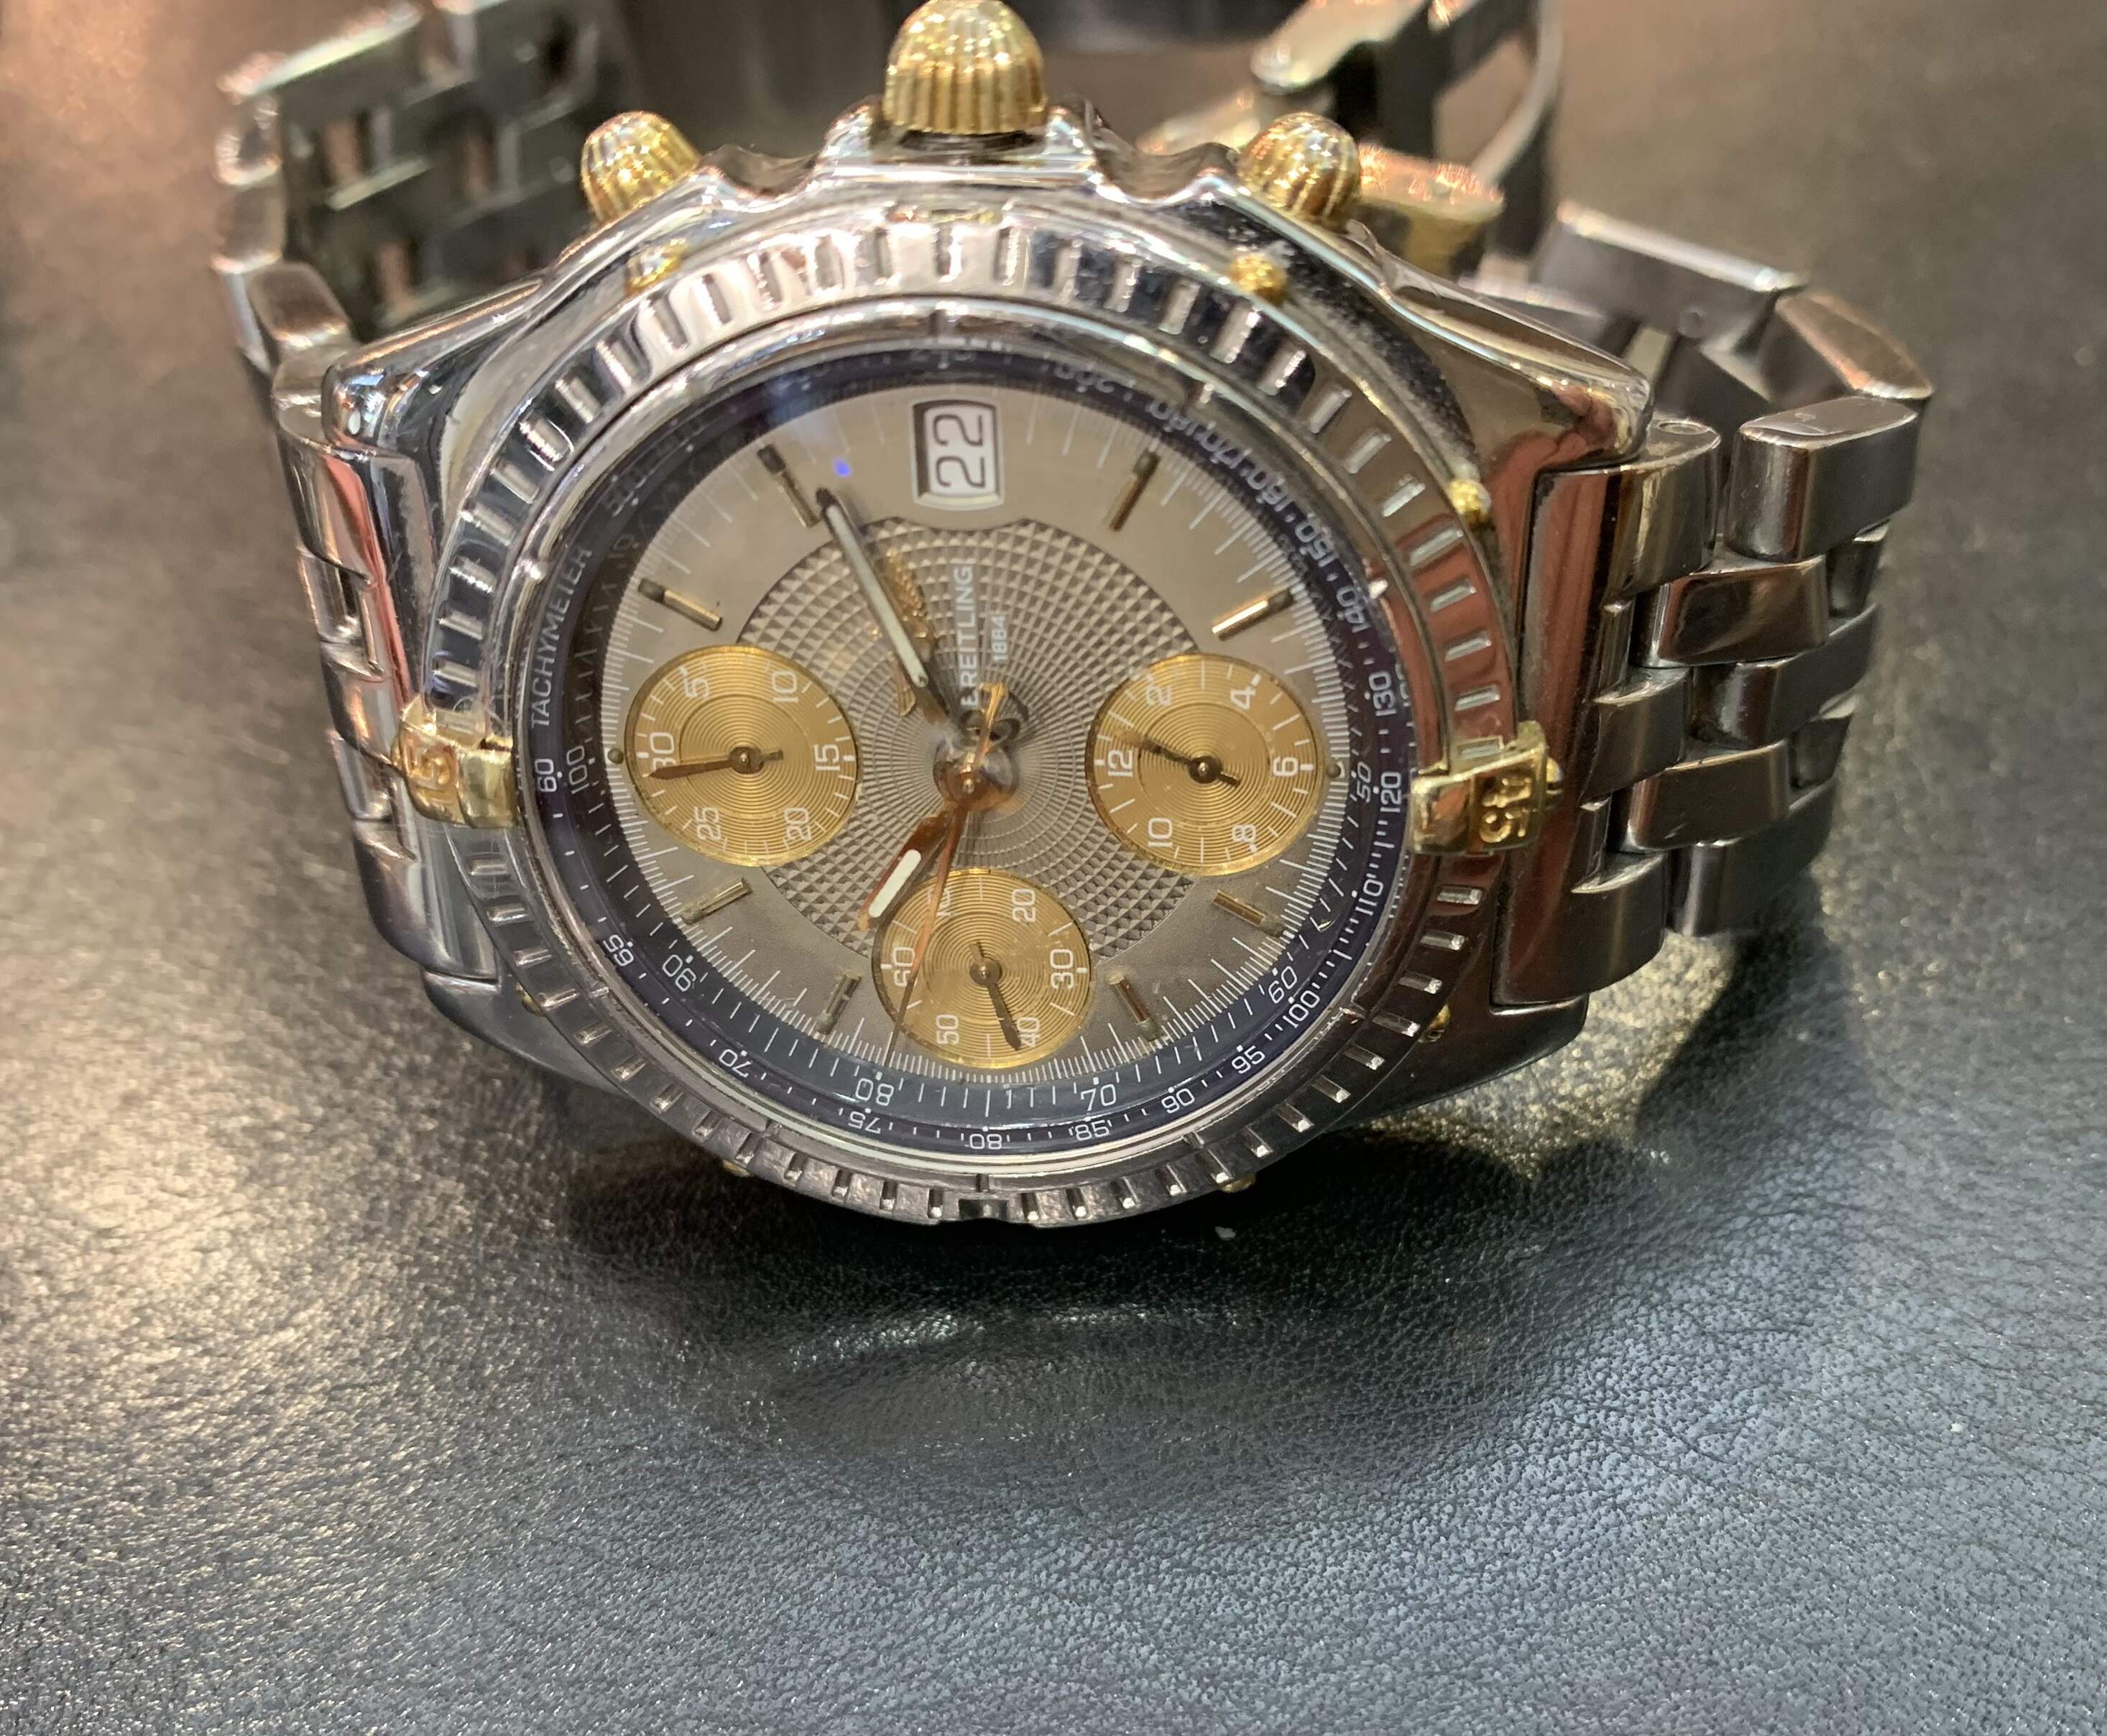 Orologio Breitling Chronomat anni 90' di secondo polso